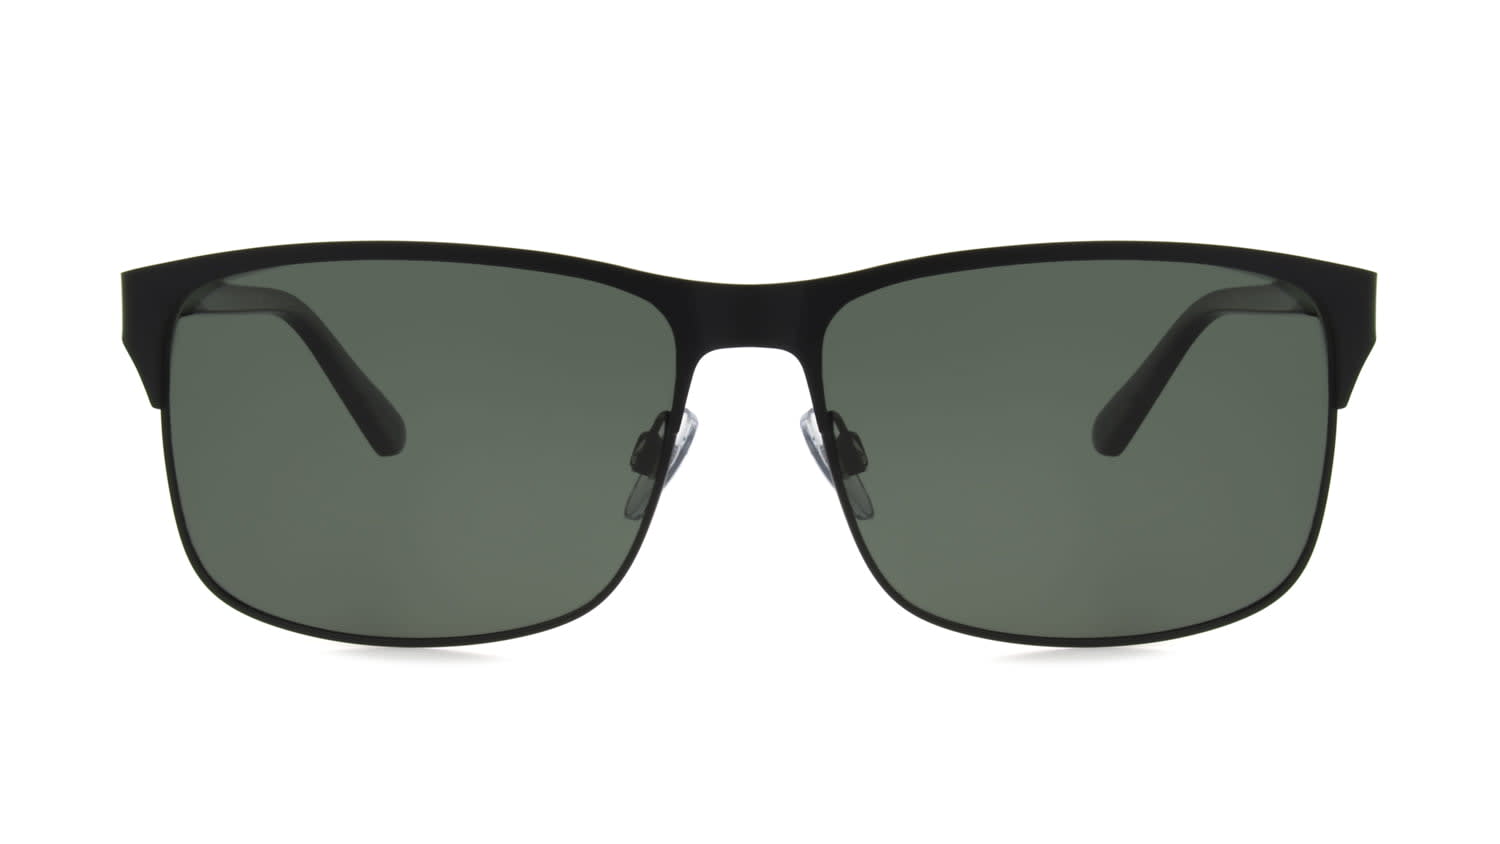 Foster Grant Glass Sunglasses for Men